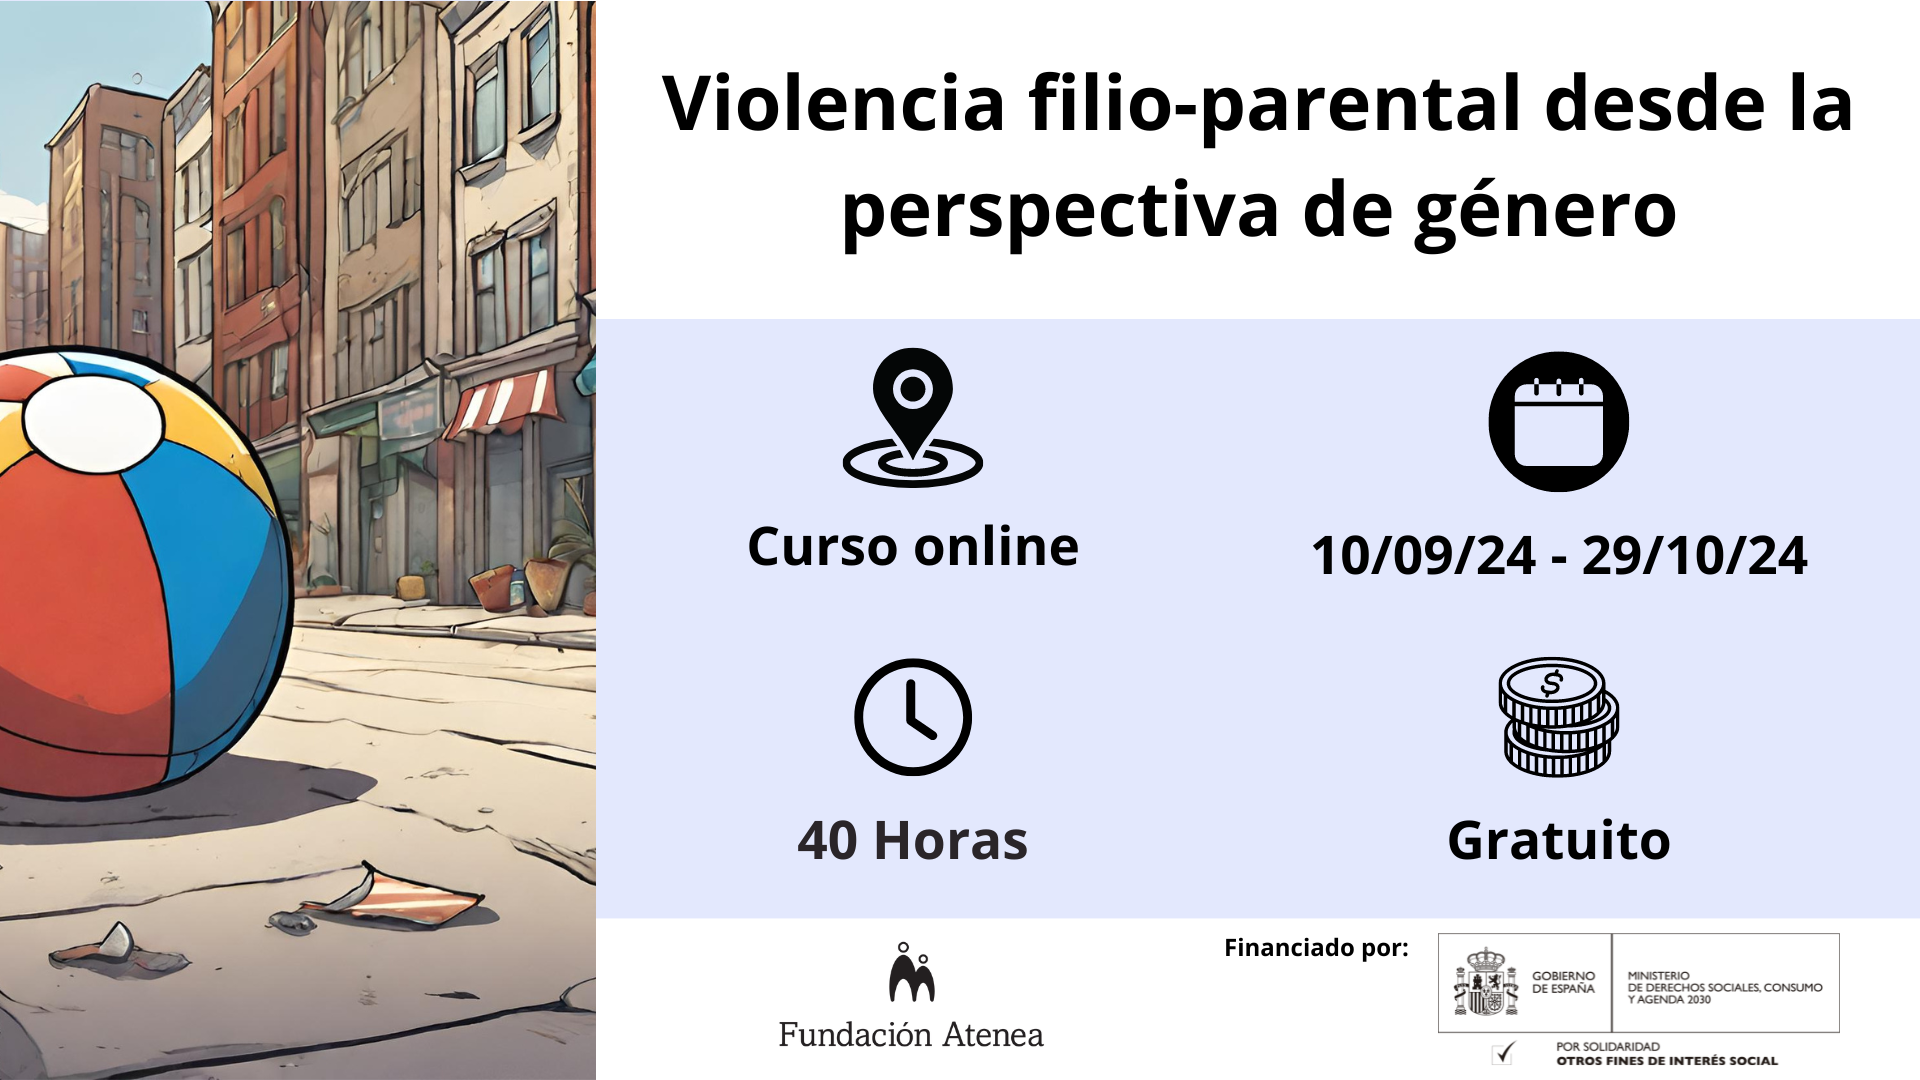 Violencia filio-parental desde la perspectiva de género. Curso Online gratuito realizado del 10/09/24 al 29/10/24 (40h)